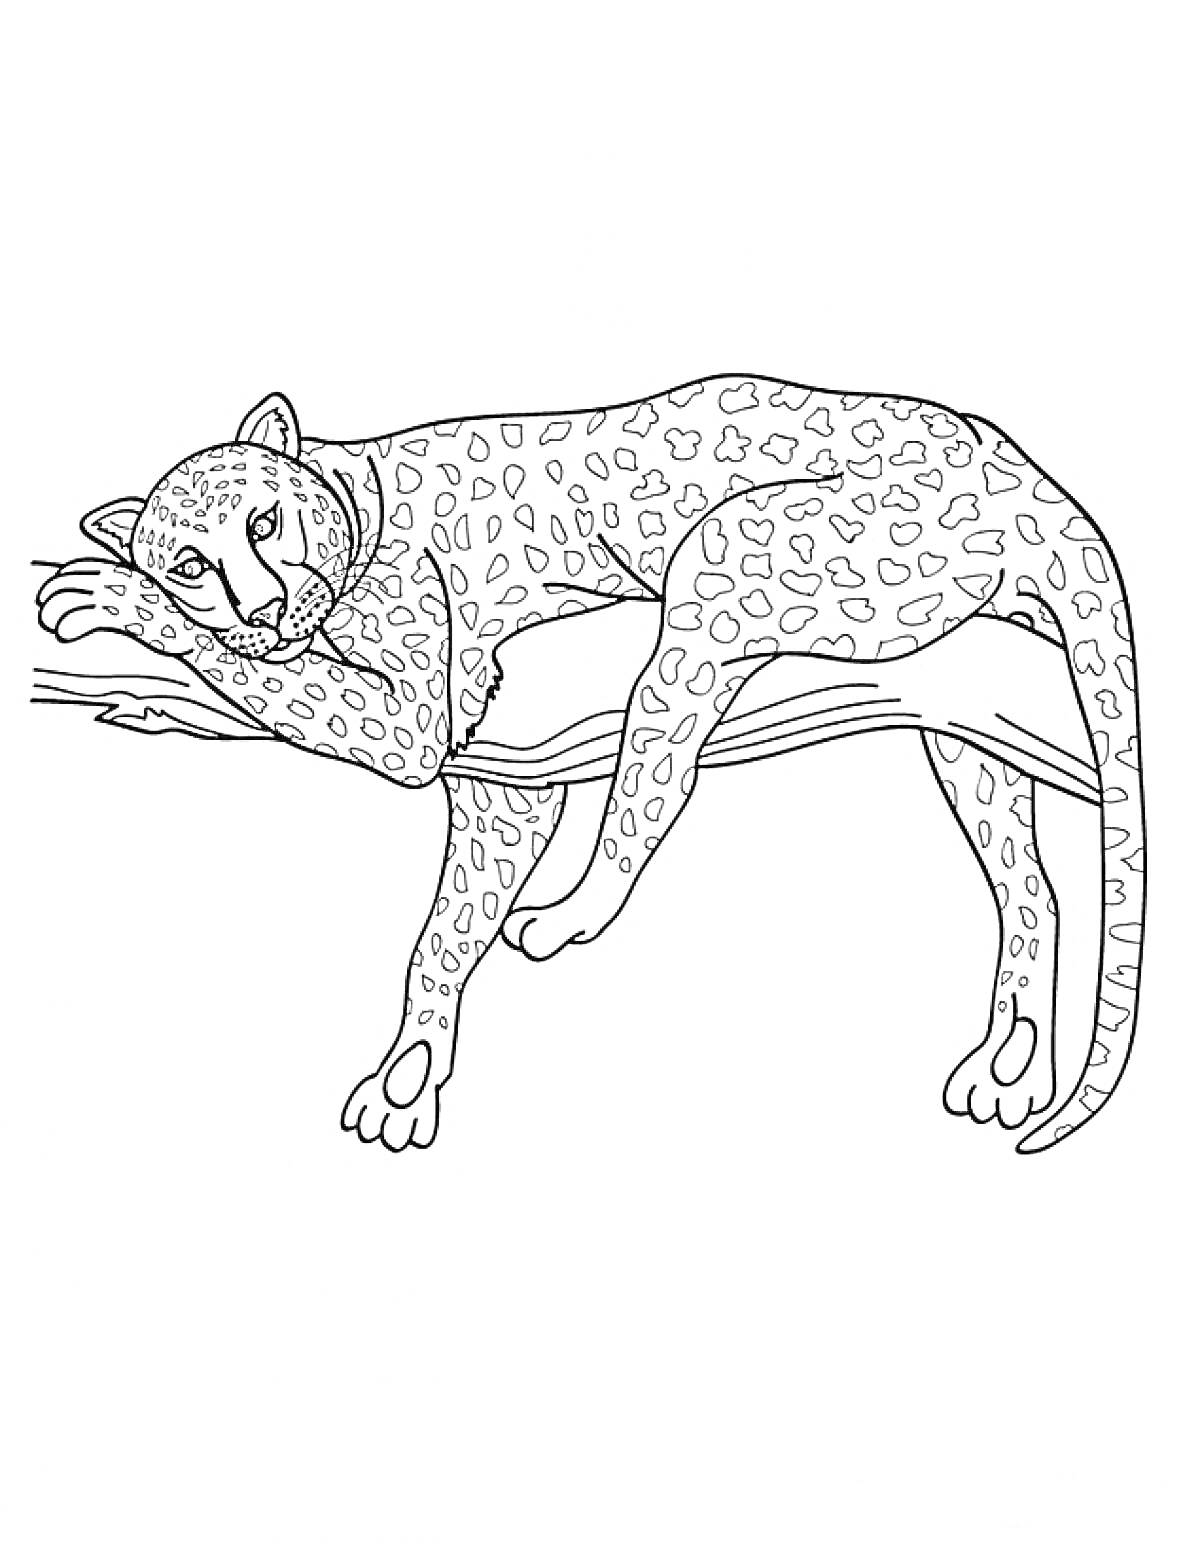 Раскраска Леопард, отдыхающий на ветке дерева